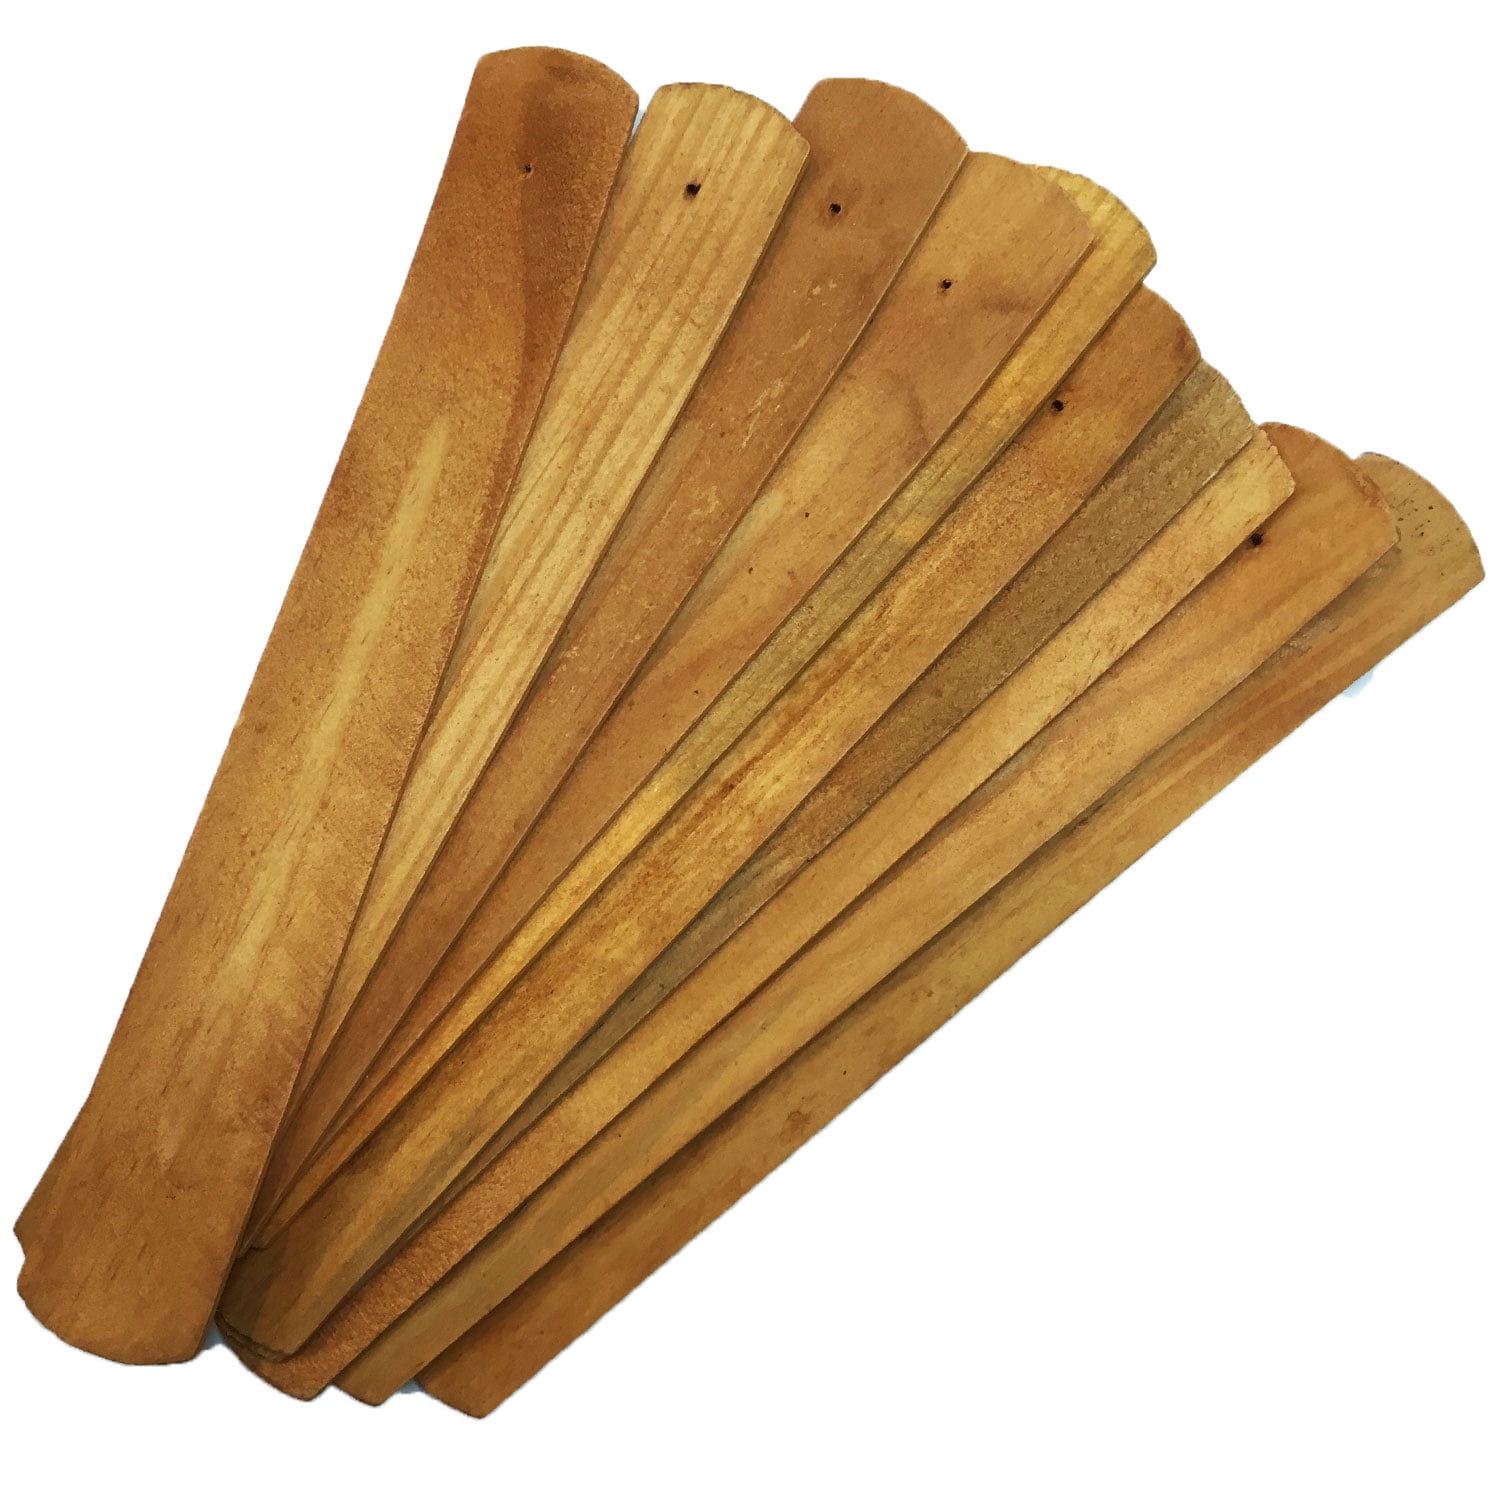 natural plain wood wooden incense stick ash catcher burner holder*BLUS 